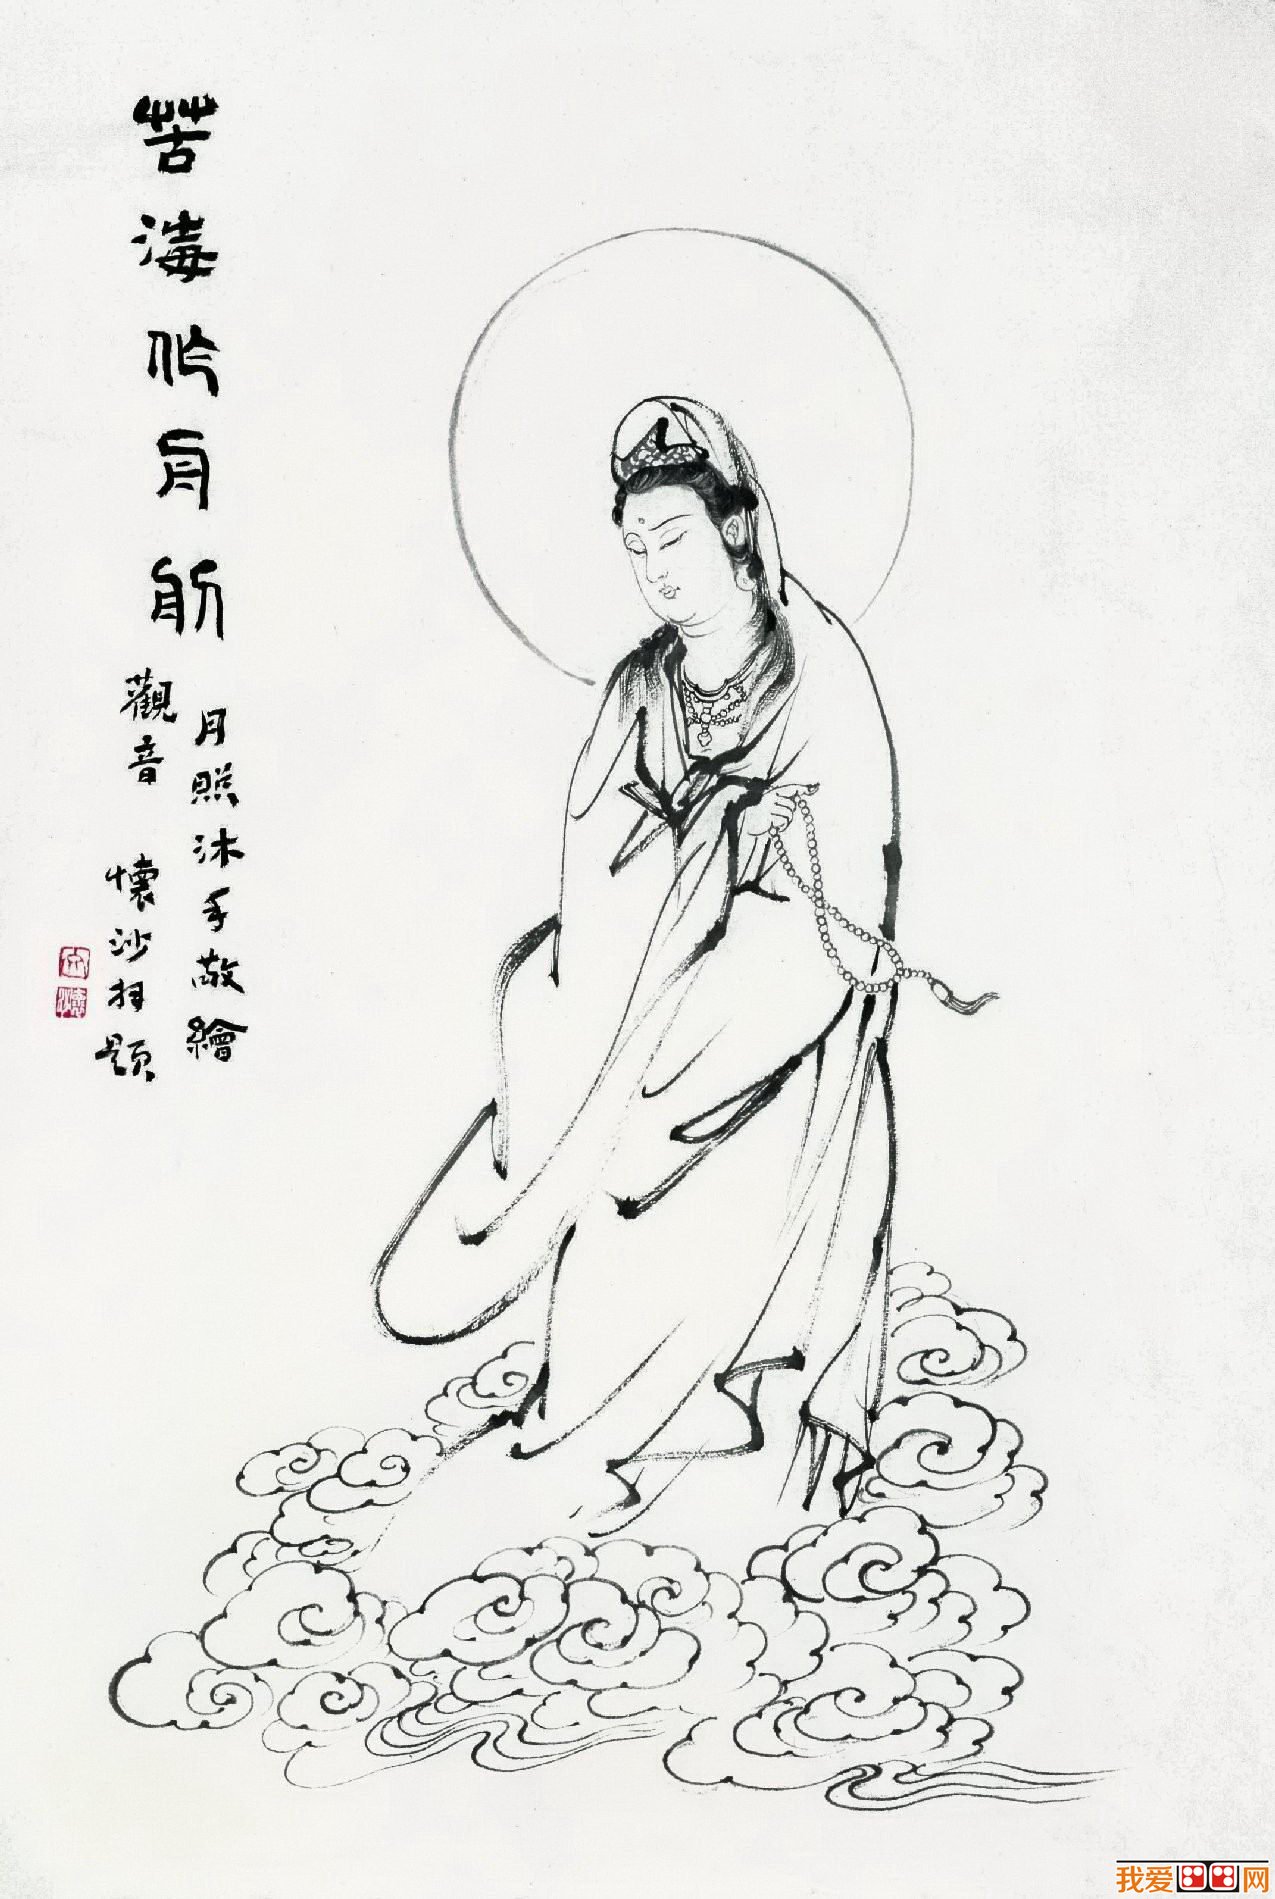 百科 中国名画 白描画    月照和尚俗名张洪彬,1968年出生于黑龙江省